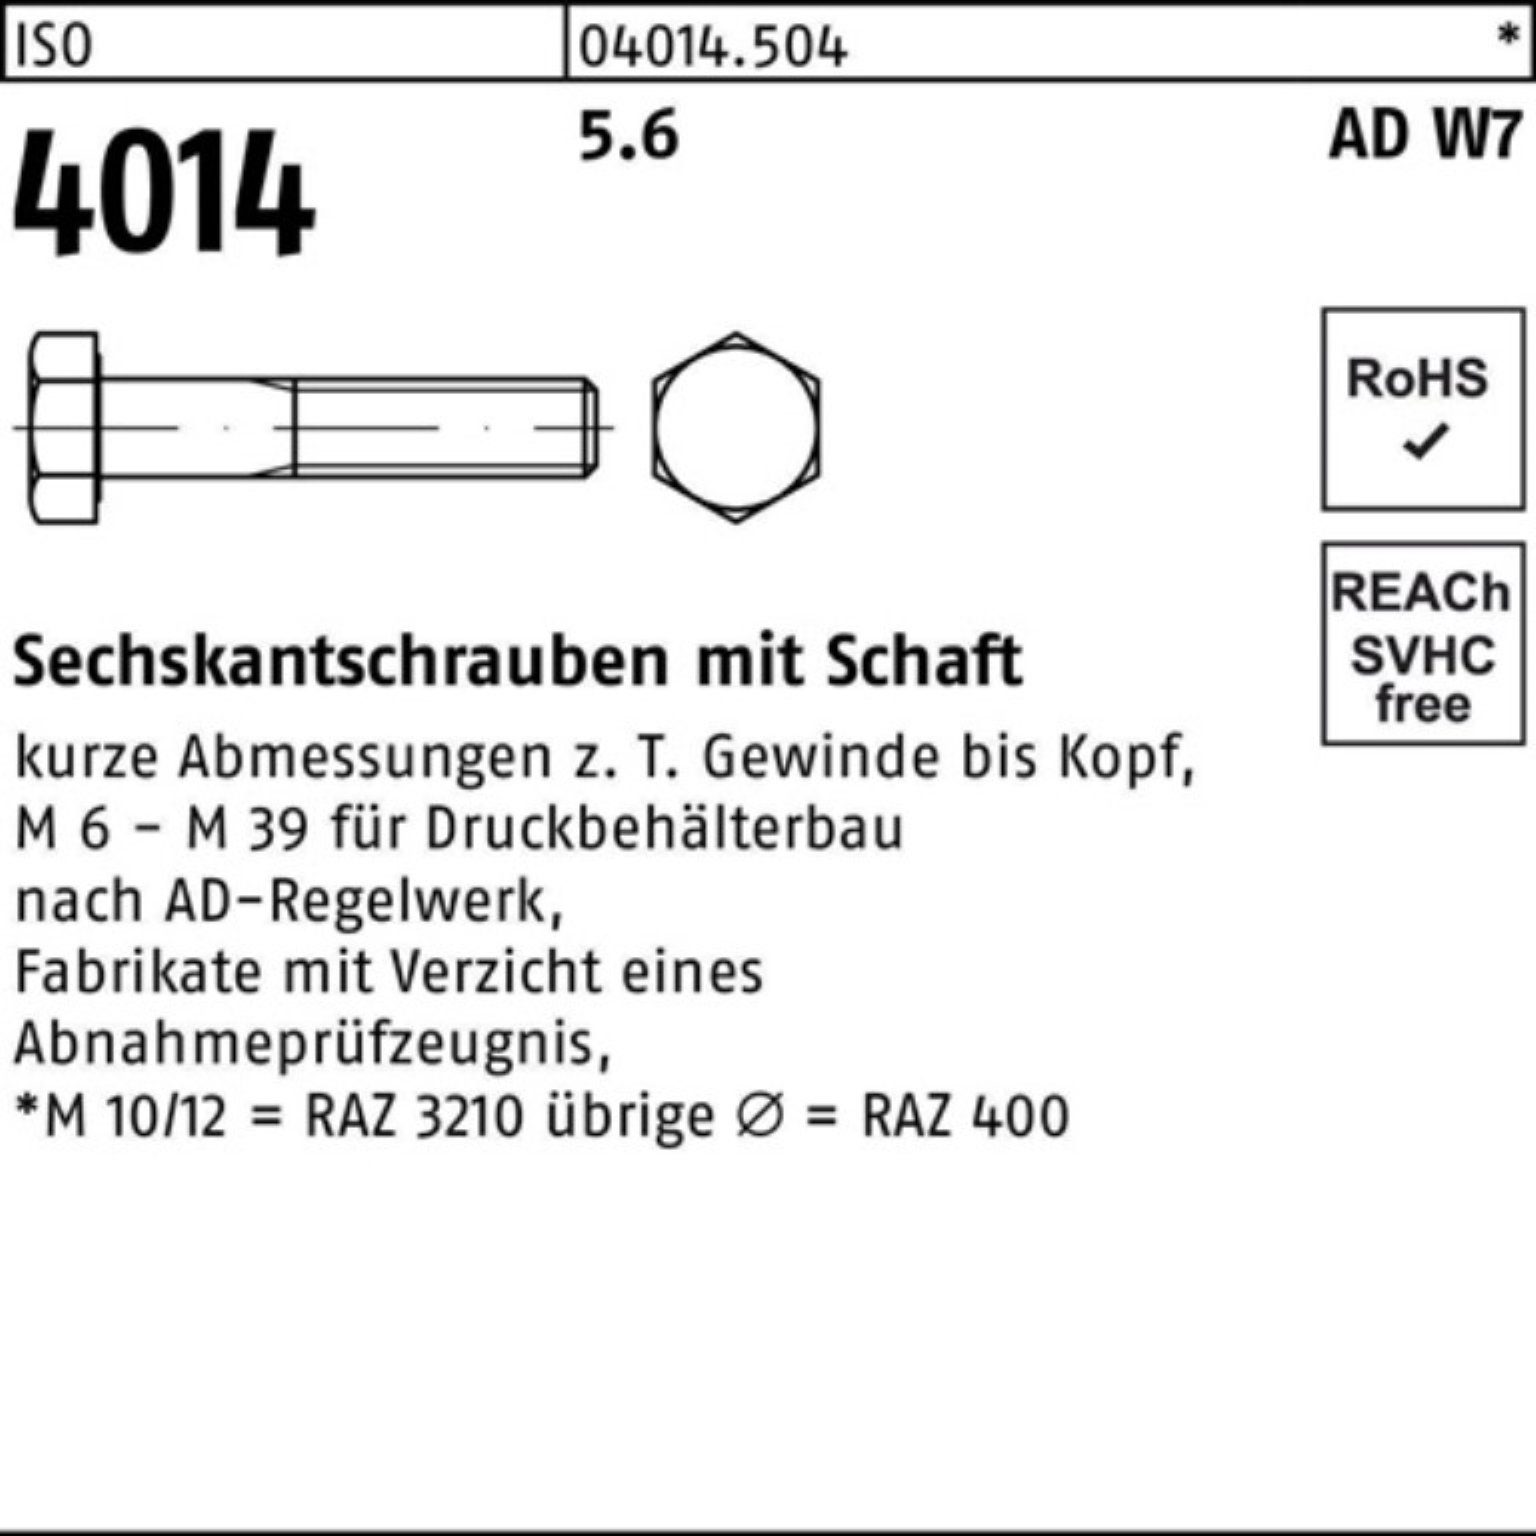 Sechskantschraube 5.6 25 Pack 4014 ISO 100er Sechskantschraube Bufab 85 Schaft W7 Stück M20x